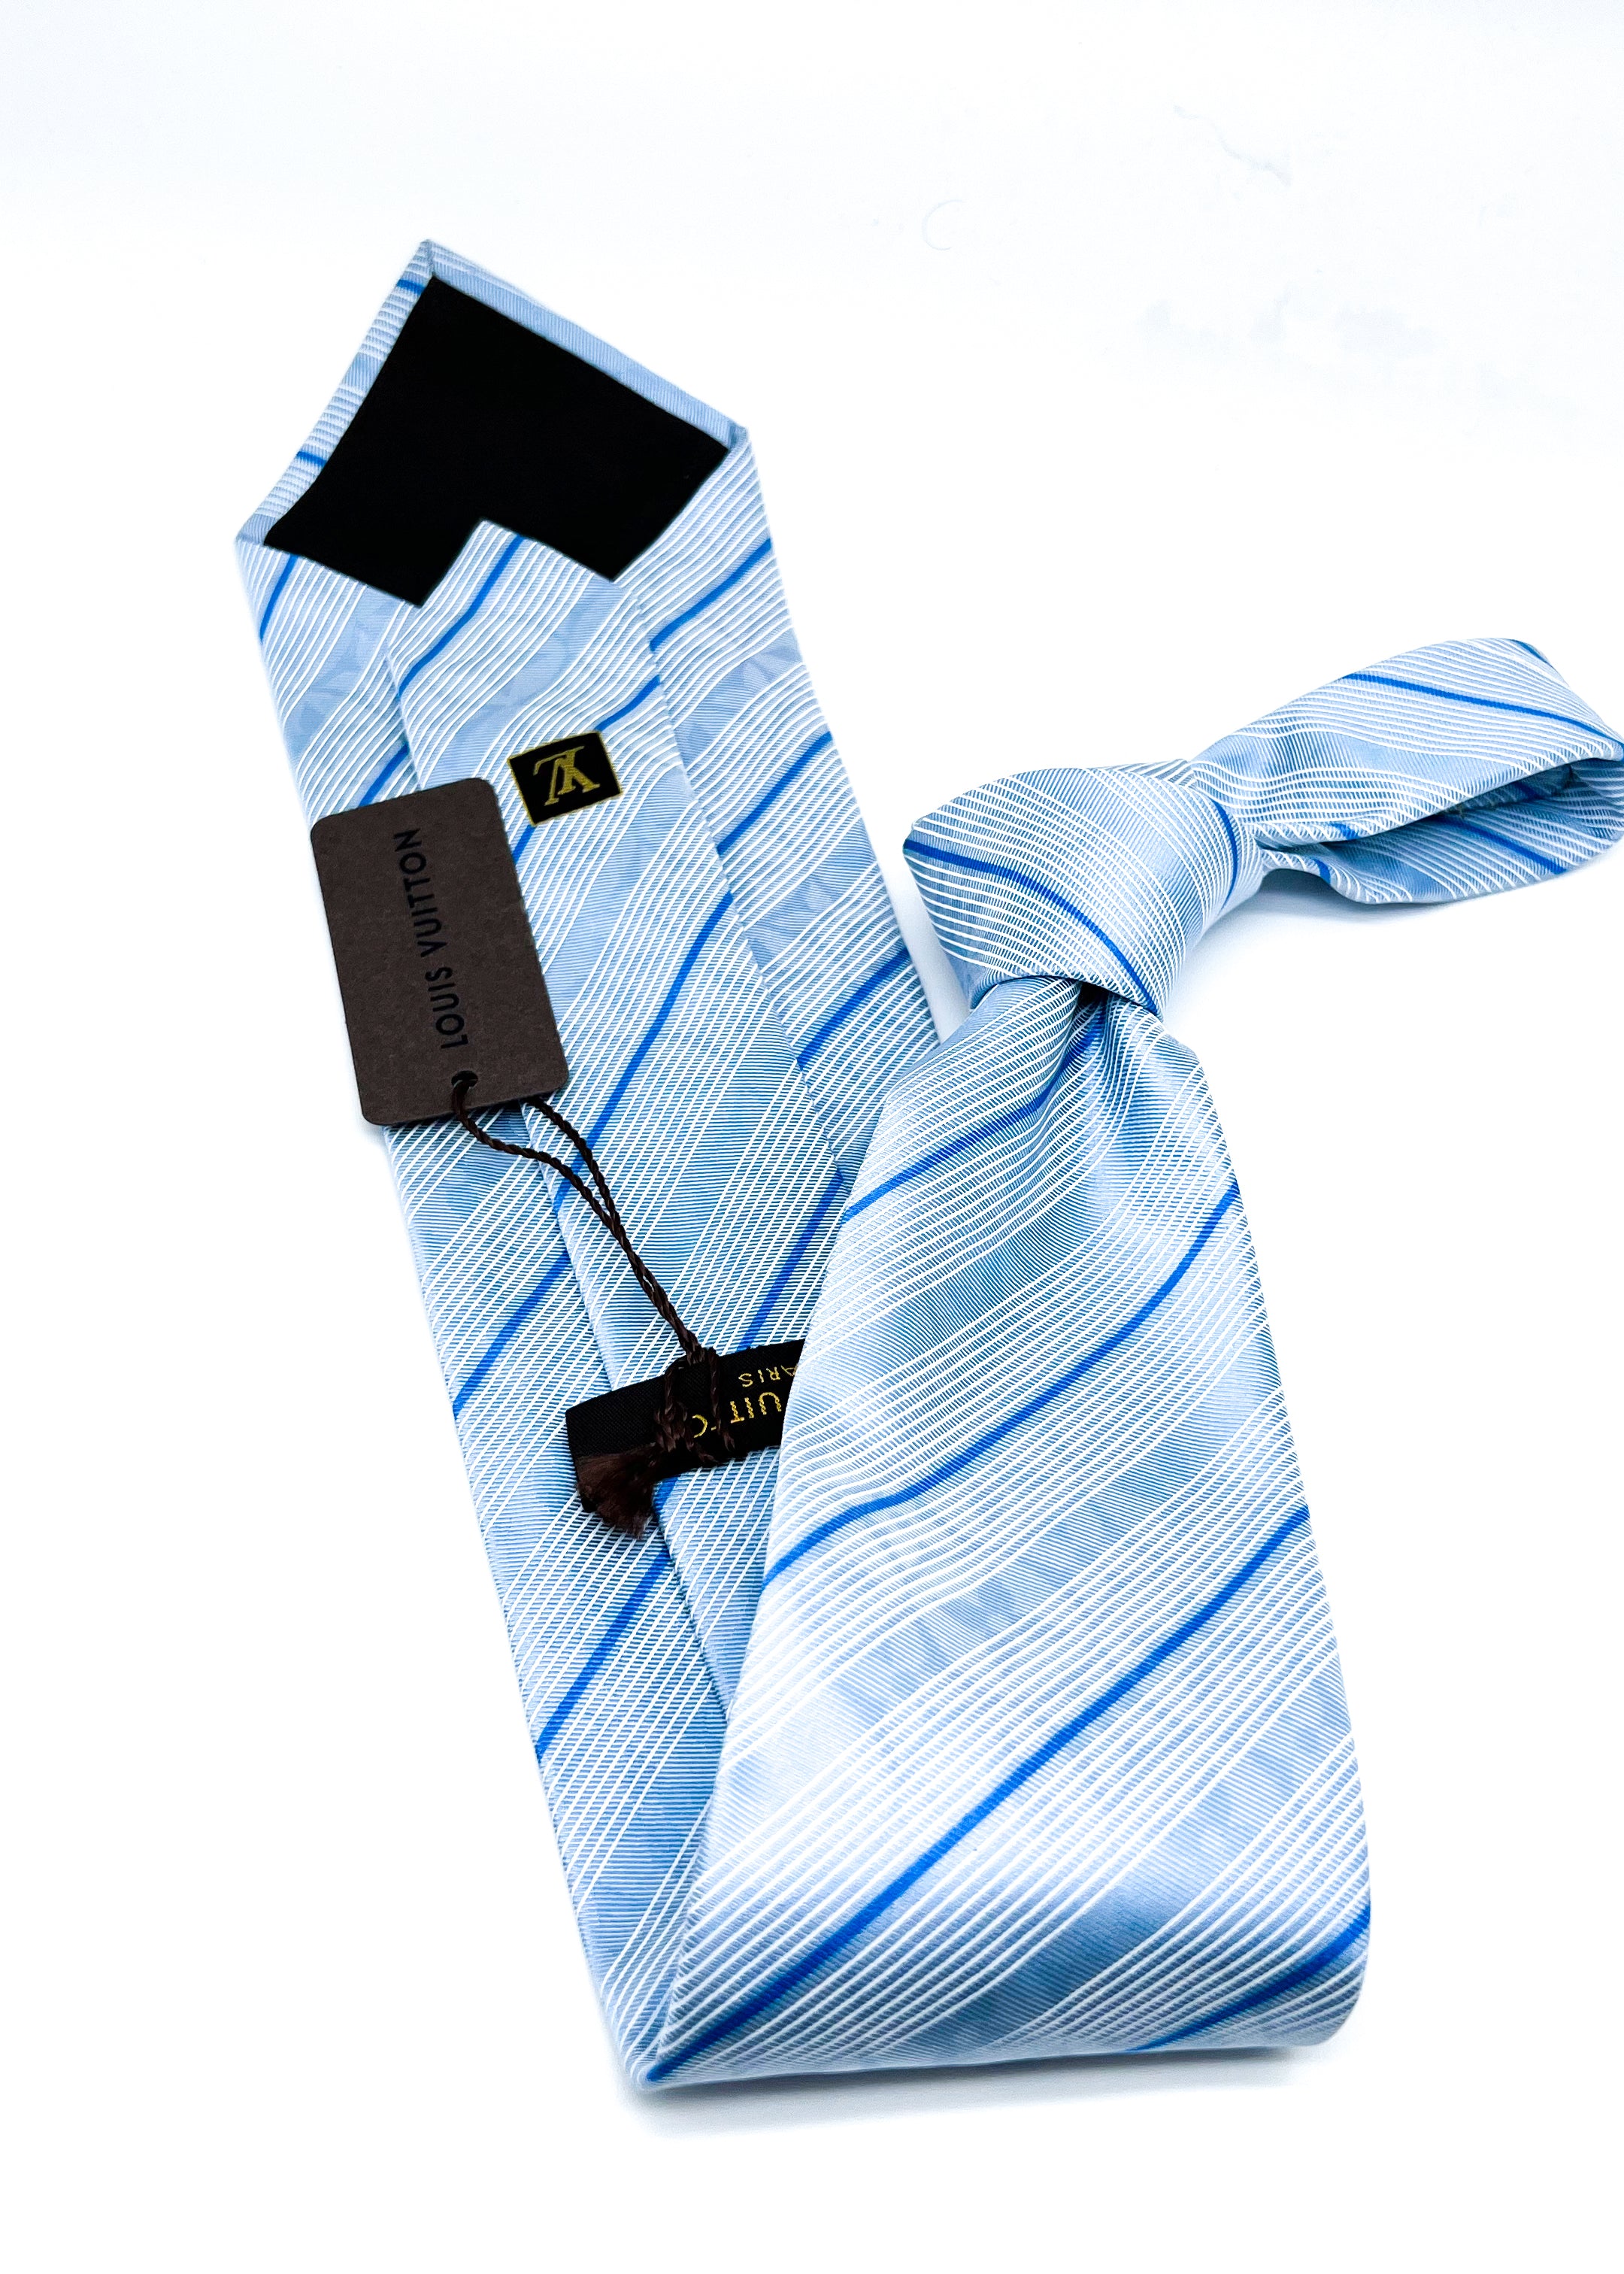 Silk tie Louis Vuitton Blue in Silk - 12668941